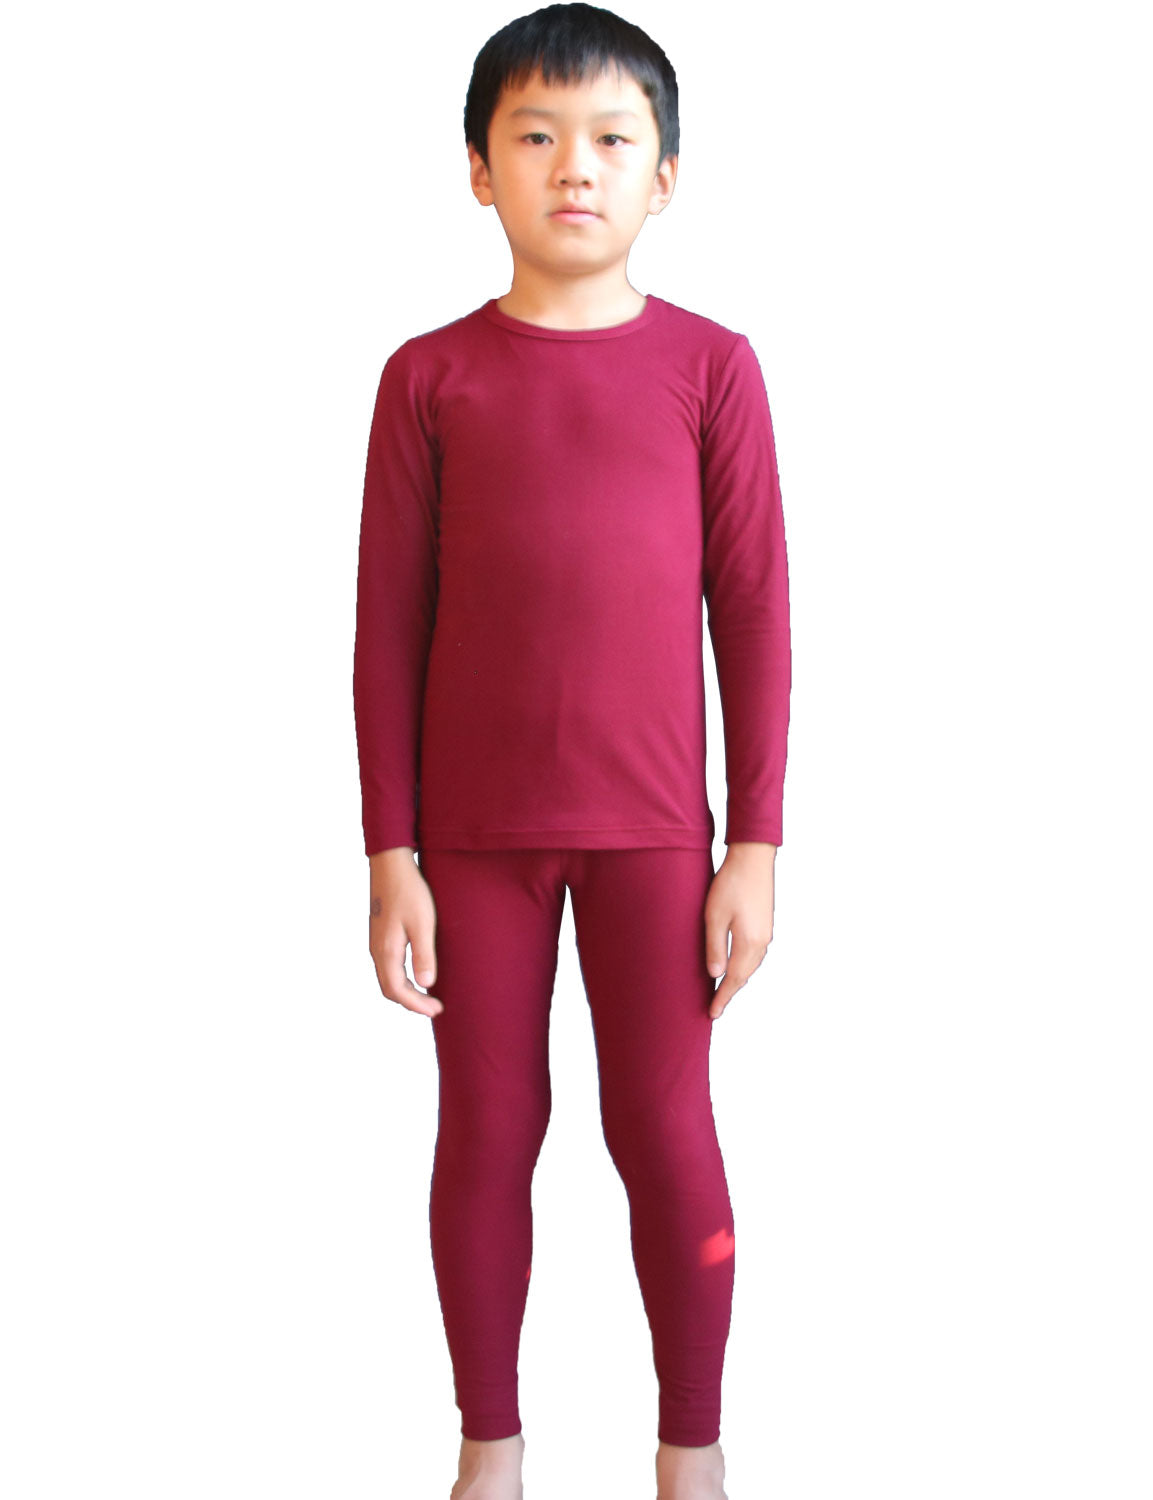 LANBAOSI Children's Boys Sleepwear Thermal Underwear Sets Fleece Lined